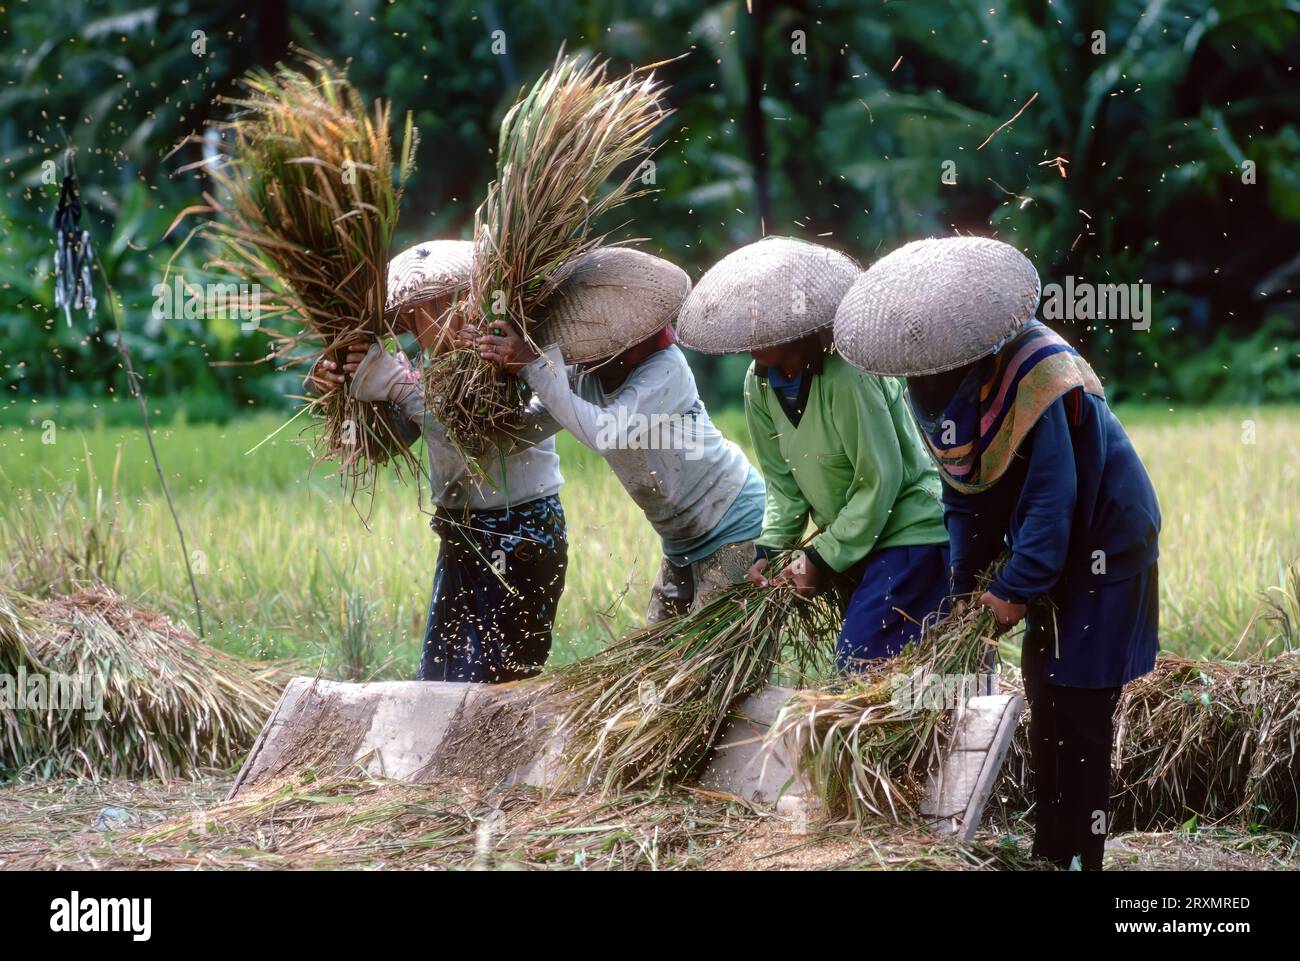 IDN, Indonesien, Bali: Reisernte auf der Insel Bali. Die Spreu wird im Wind von den Reiskoernern getrennt | IDN, Indonesia, Bali: rice harvest. The chaff is being separated from the rice grains Stock Photo